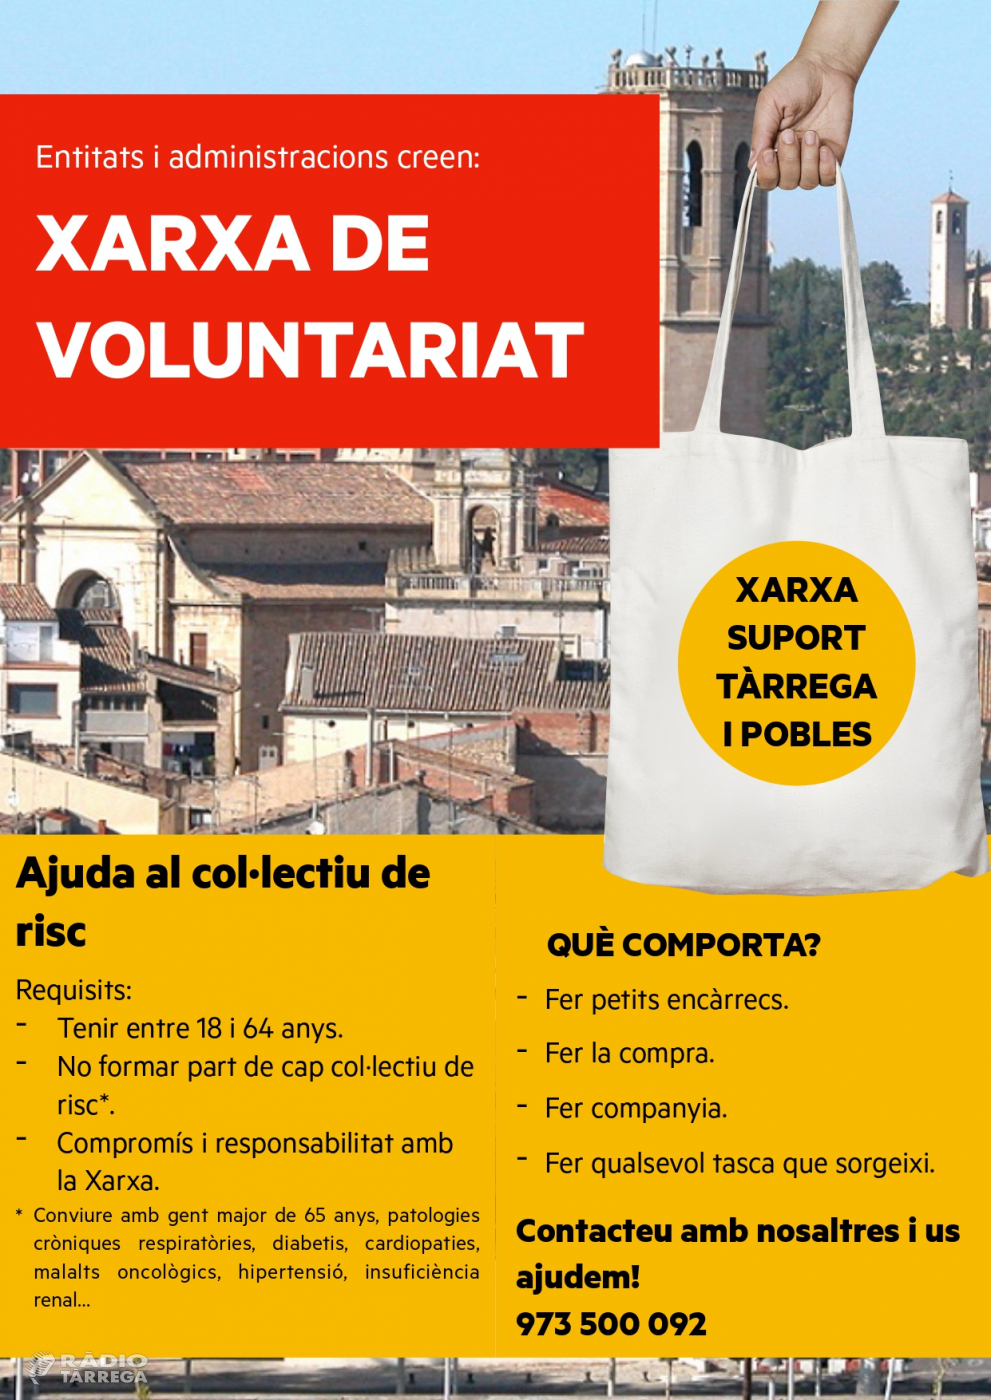 Neix la Xarxa de Voluntariat de Tàrrega i Pobles, iniciativa solidària per ajudar a atendre gent que visqui dificultats pel coronavirus